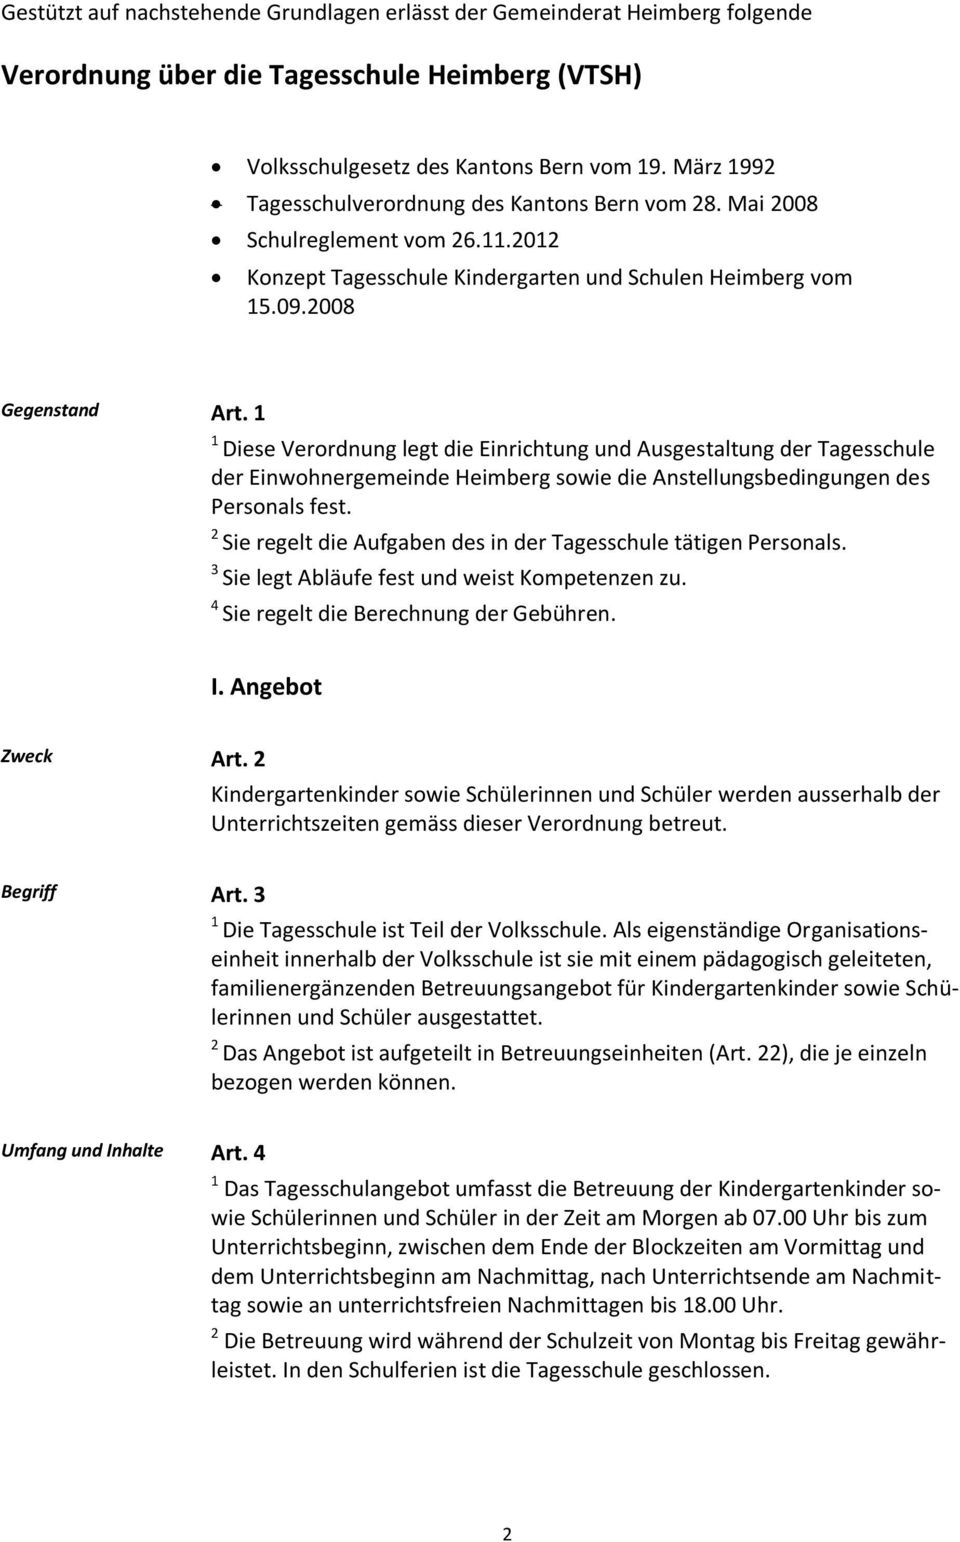 Diese Verordnung legt die Einrichtung und Ausgestaltung der Tagesschule der Einwohnergemeinde Heimberg sowie die Anstellungsbedingungen des Personals fest.